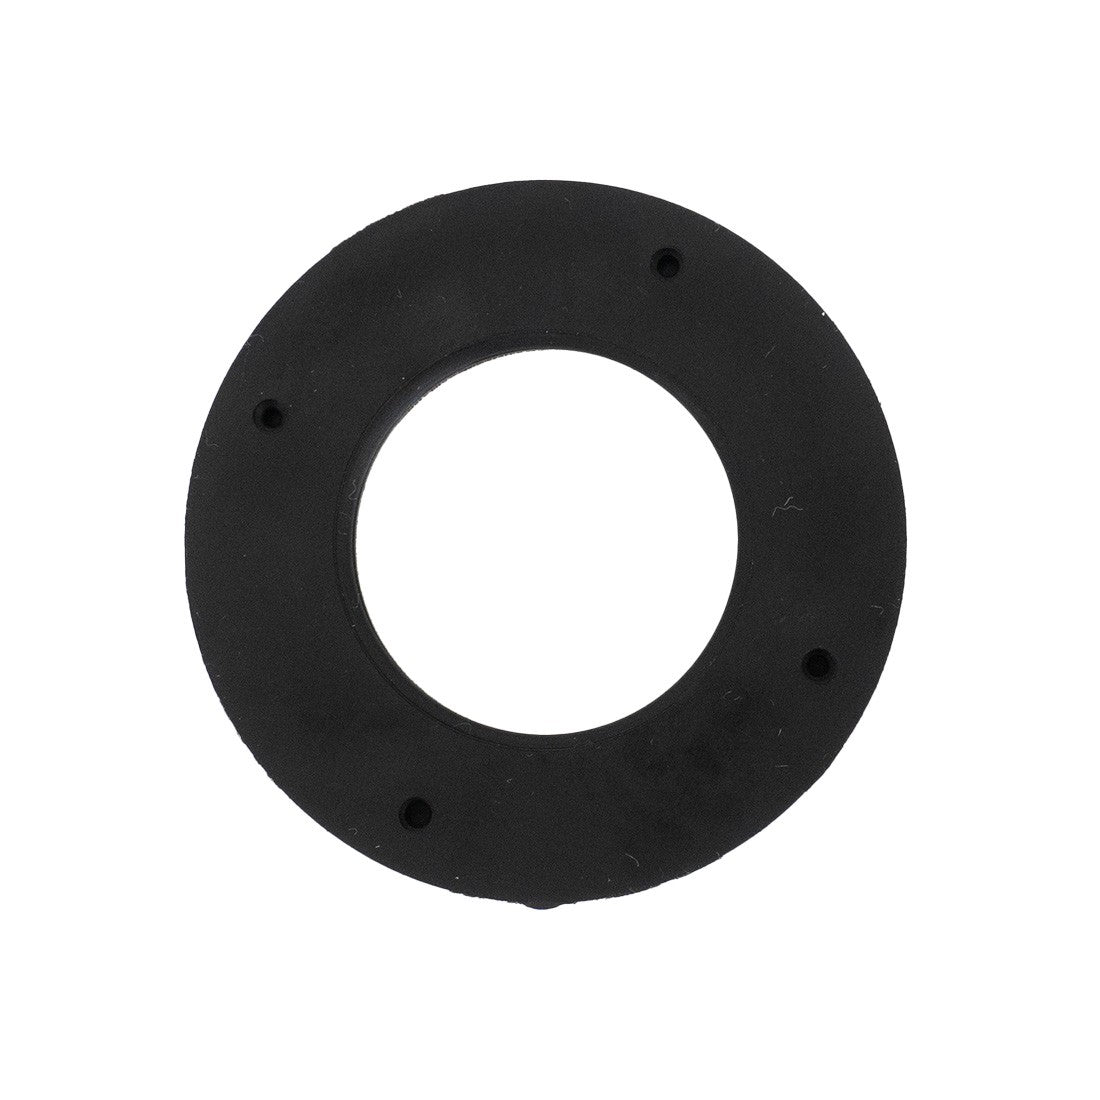 XERO DI Cartridge Replacement O-Ring Main View